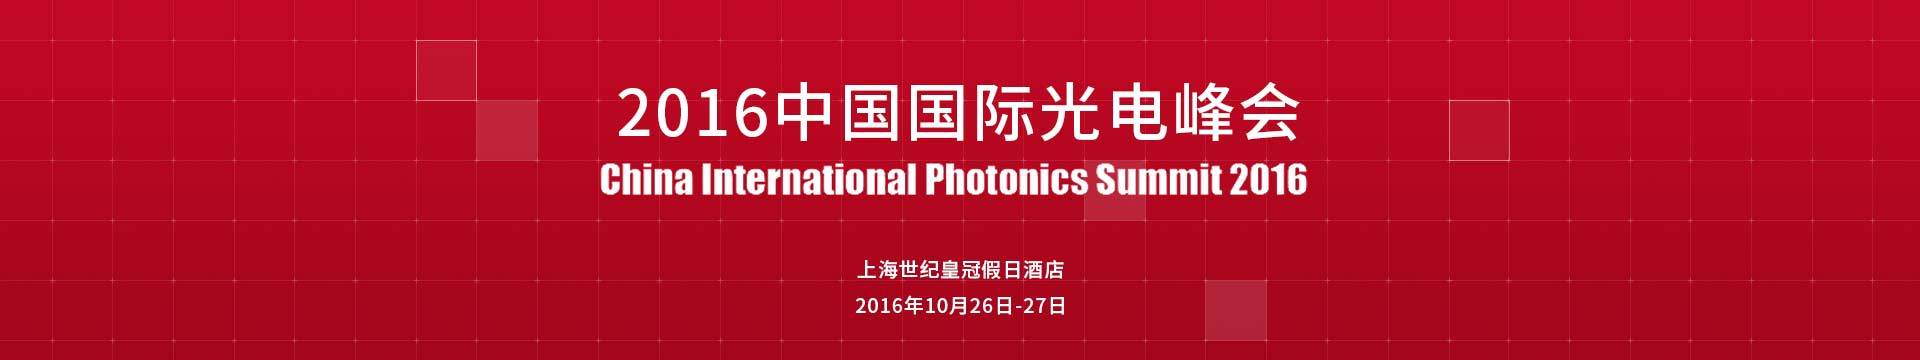 2016中国国际光电峰会